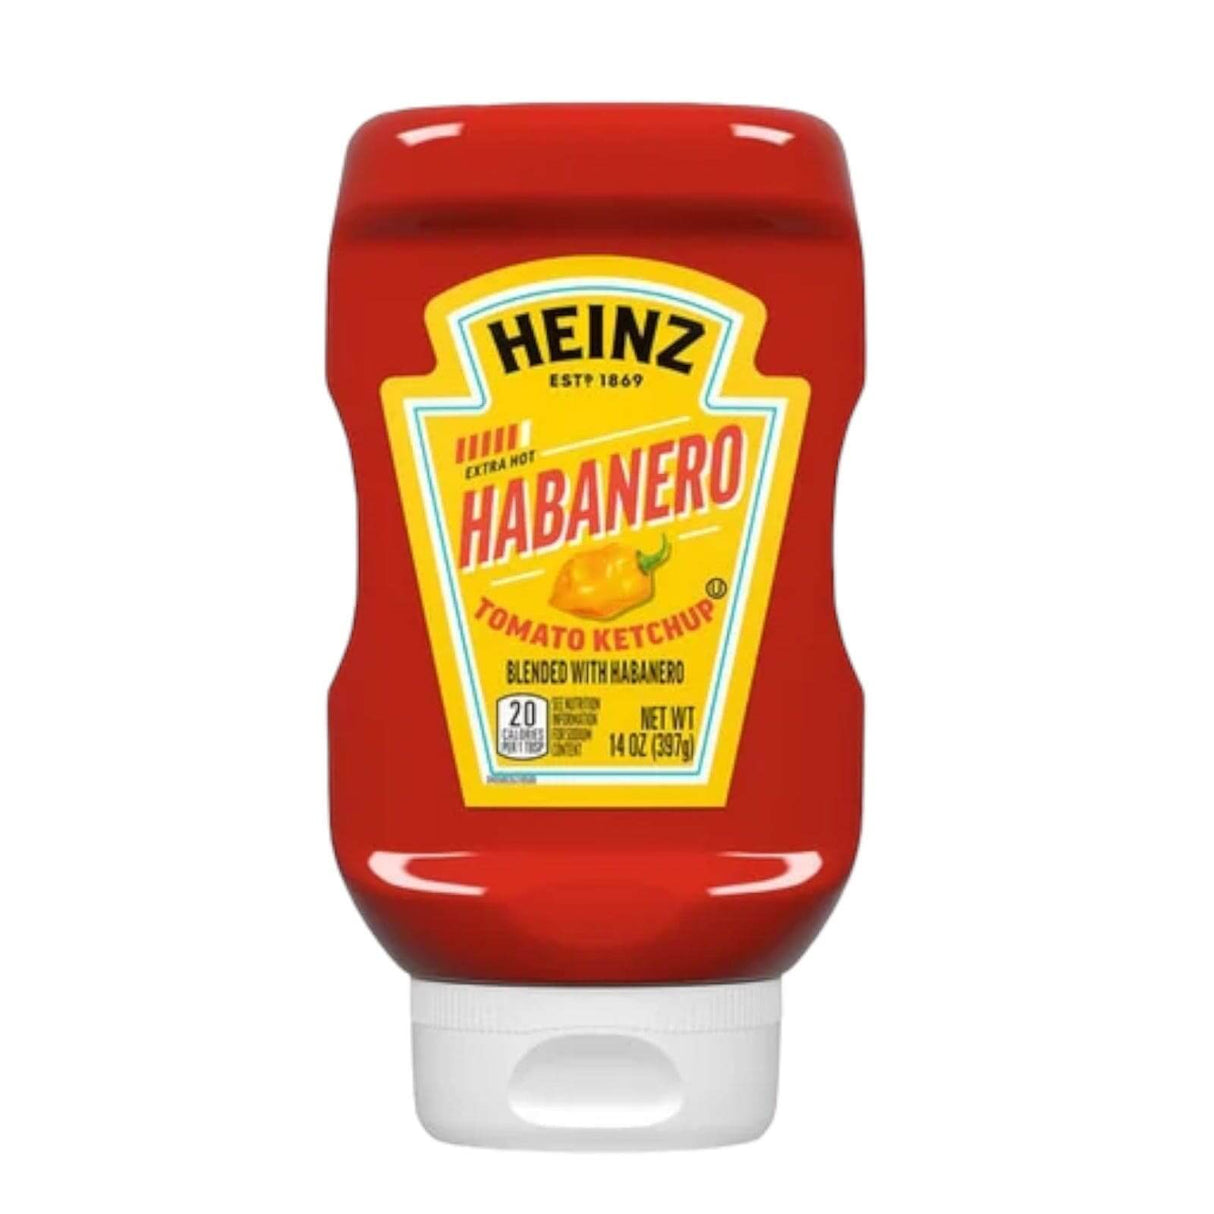 Heinz Habanero Tomato Ketchup